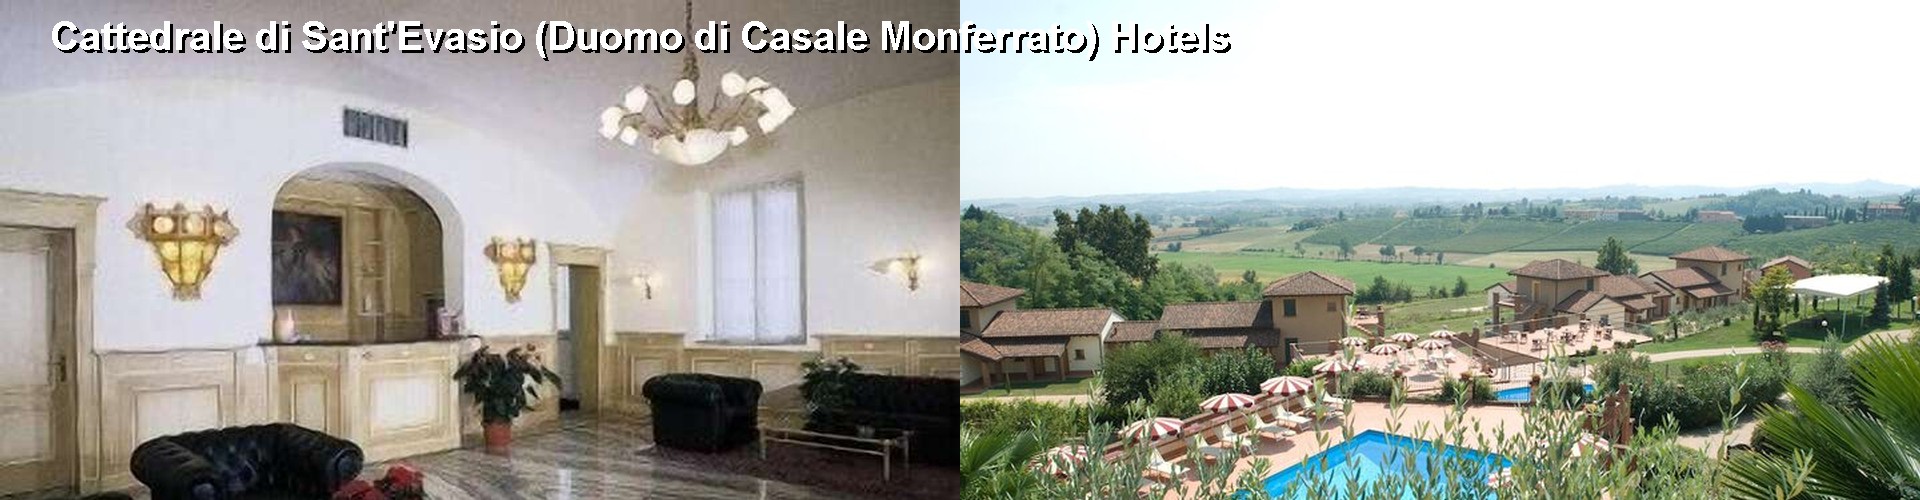 5 Best Hotels near Cattedrale di Sant'Evasio (Duomo di Casale Monferrato)